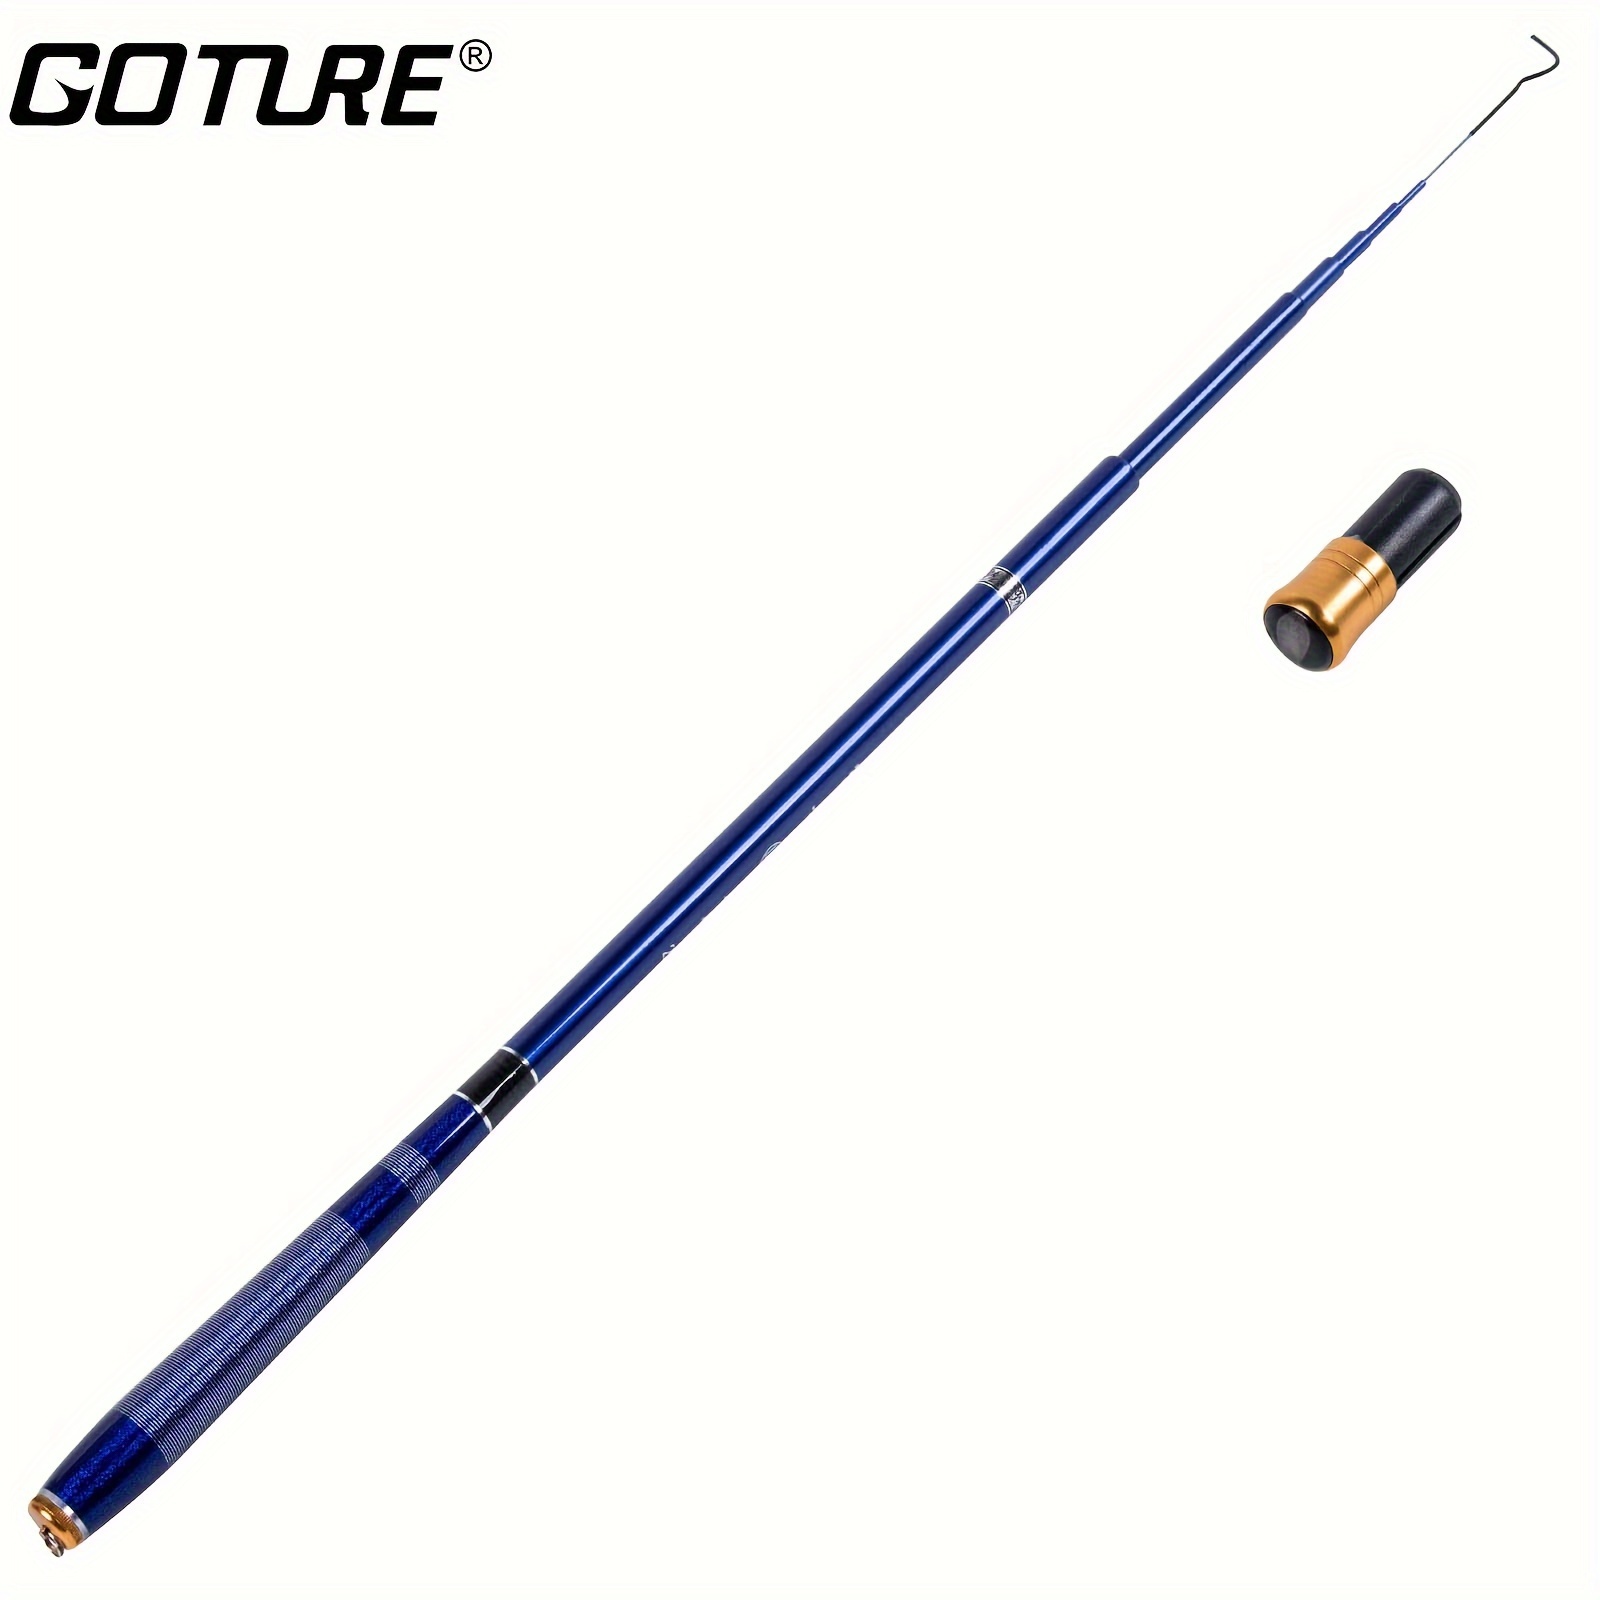 Goture Telescopic Fishing Rod, Carbon Fiber Fishing Pole